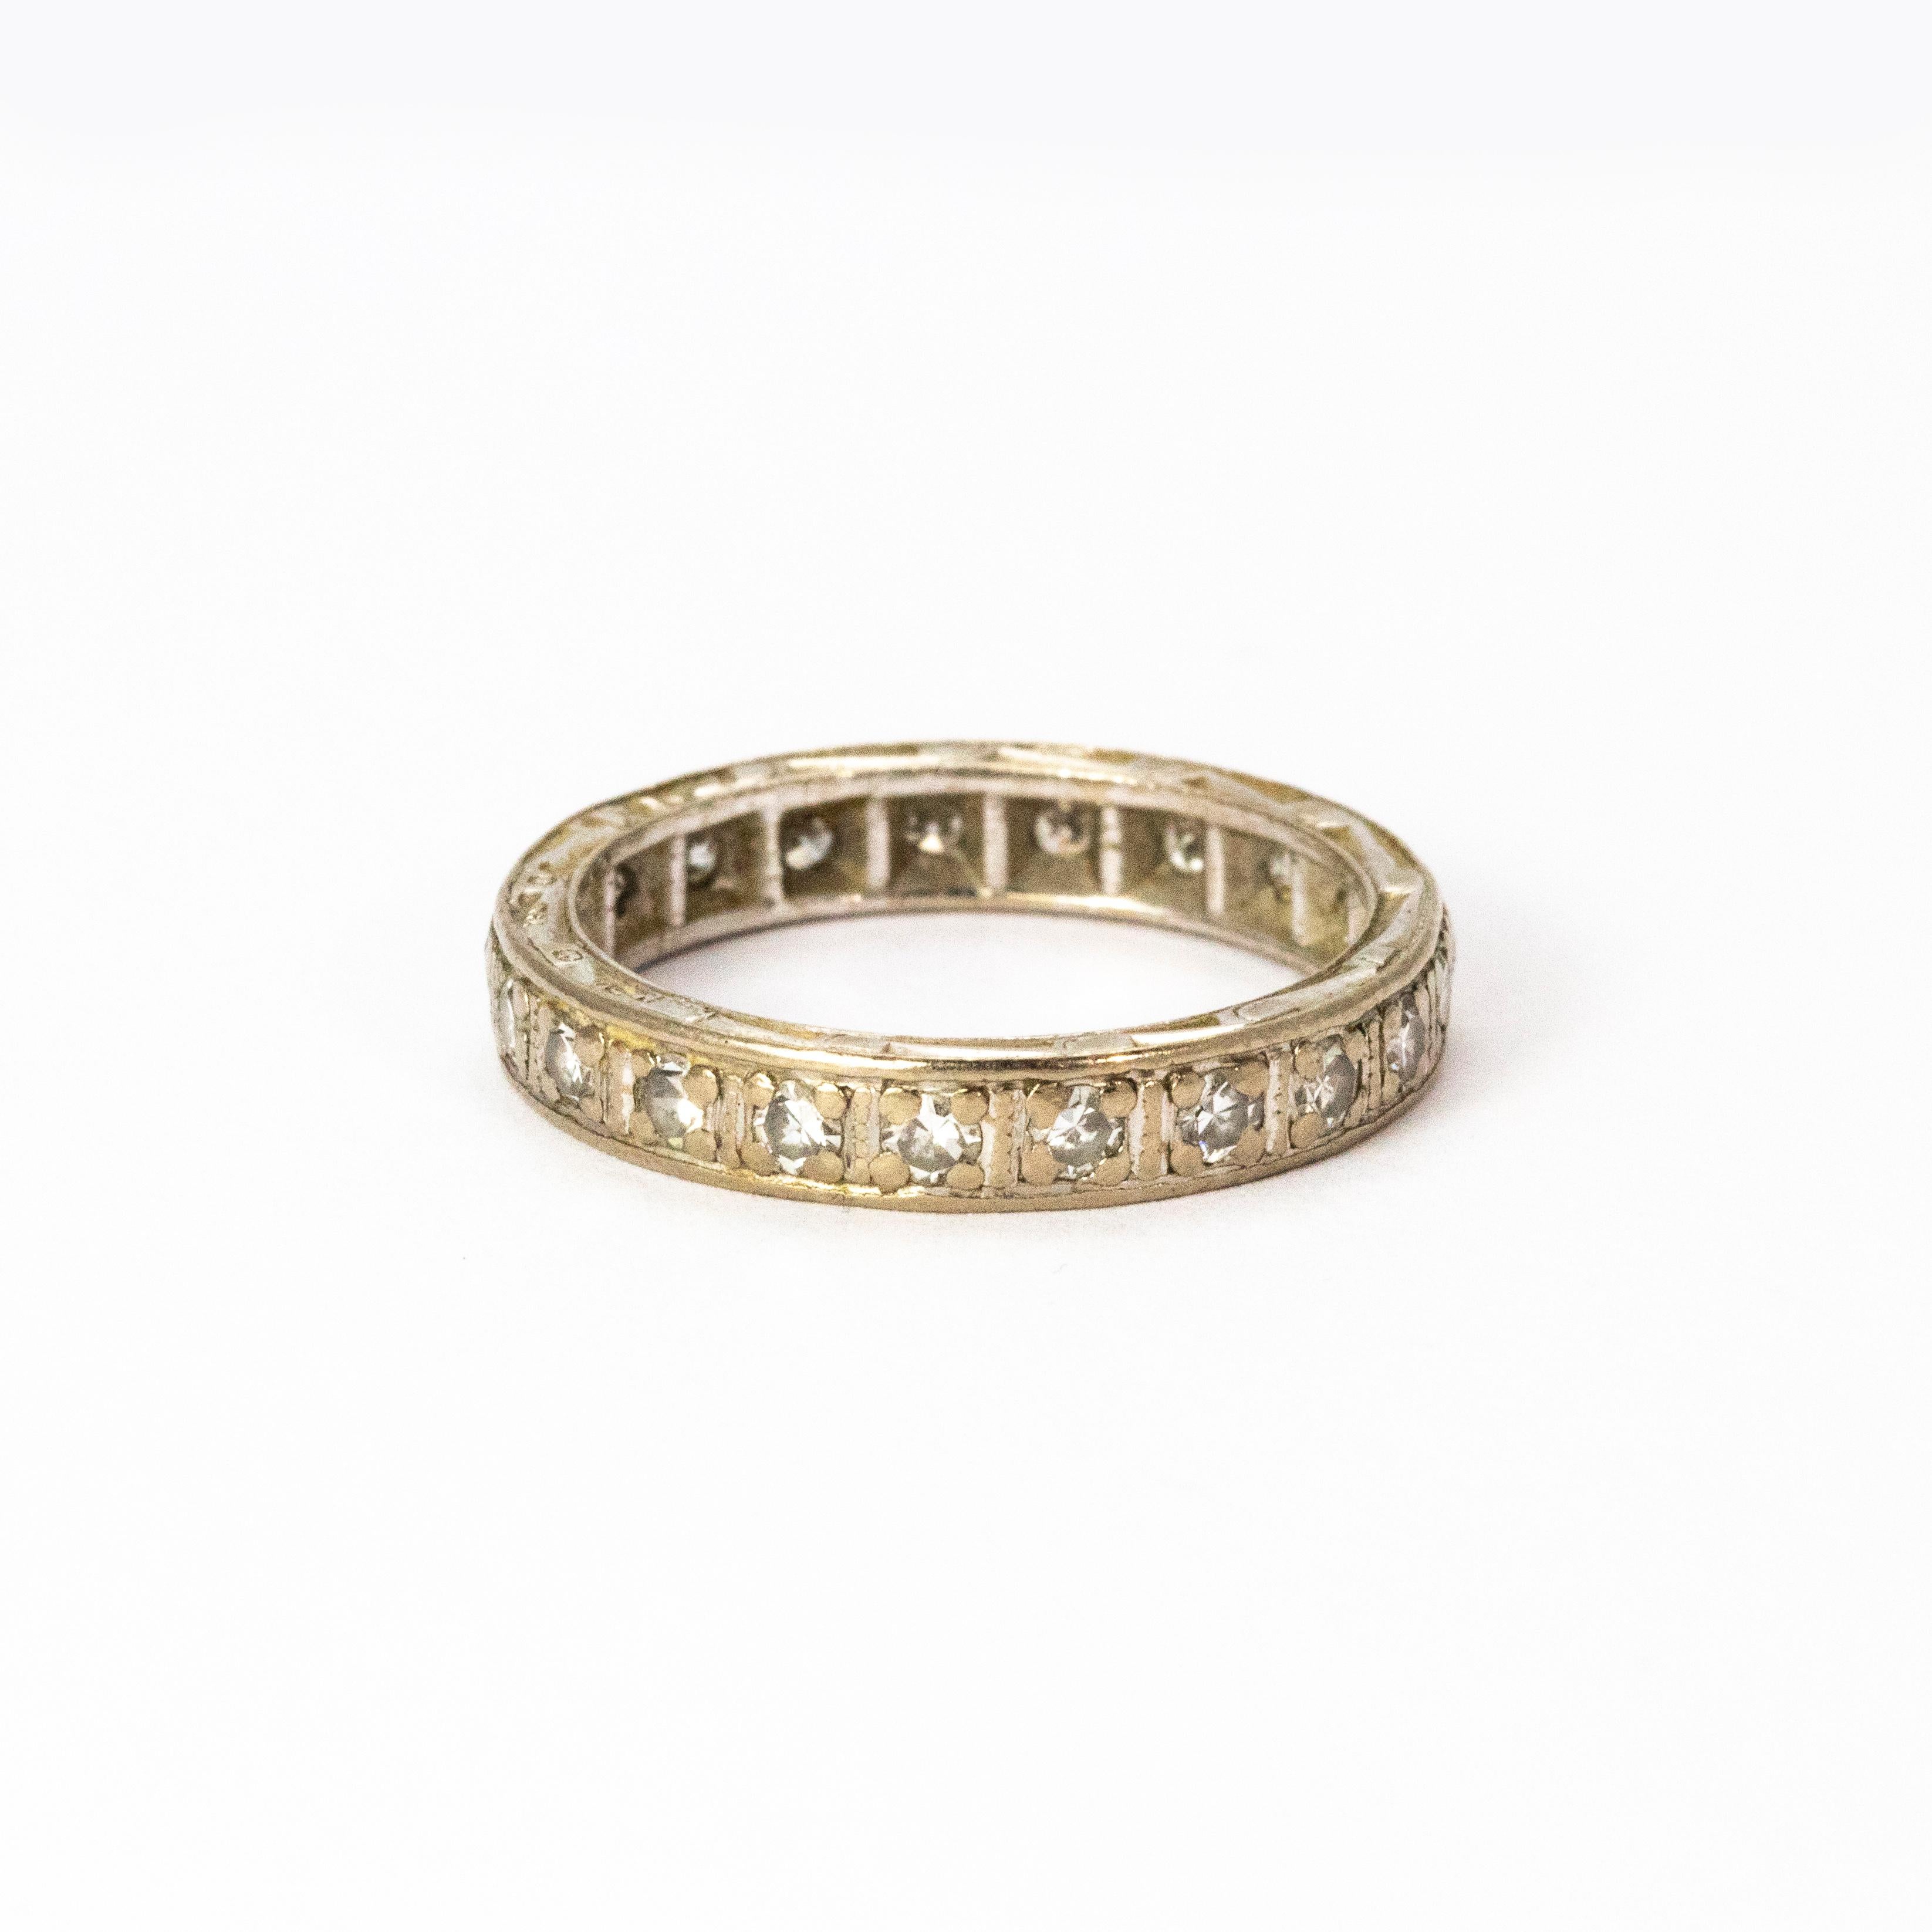 Un élégant bracelet d'éternité vintage avec 22 diamants blancs ronds de taille brillant dans des montures carrées. Modelée en or blanc 18 carats, chaque pierre pèse 5 points. Poids total des diamants : 1,10 carats.

Taille de la bague : H 1/2 ou 4